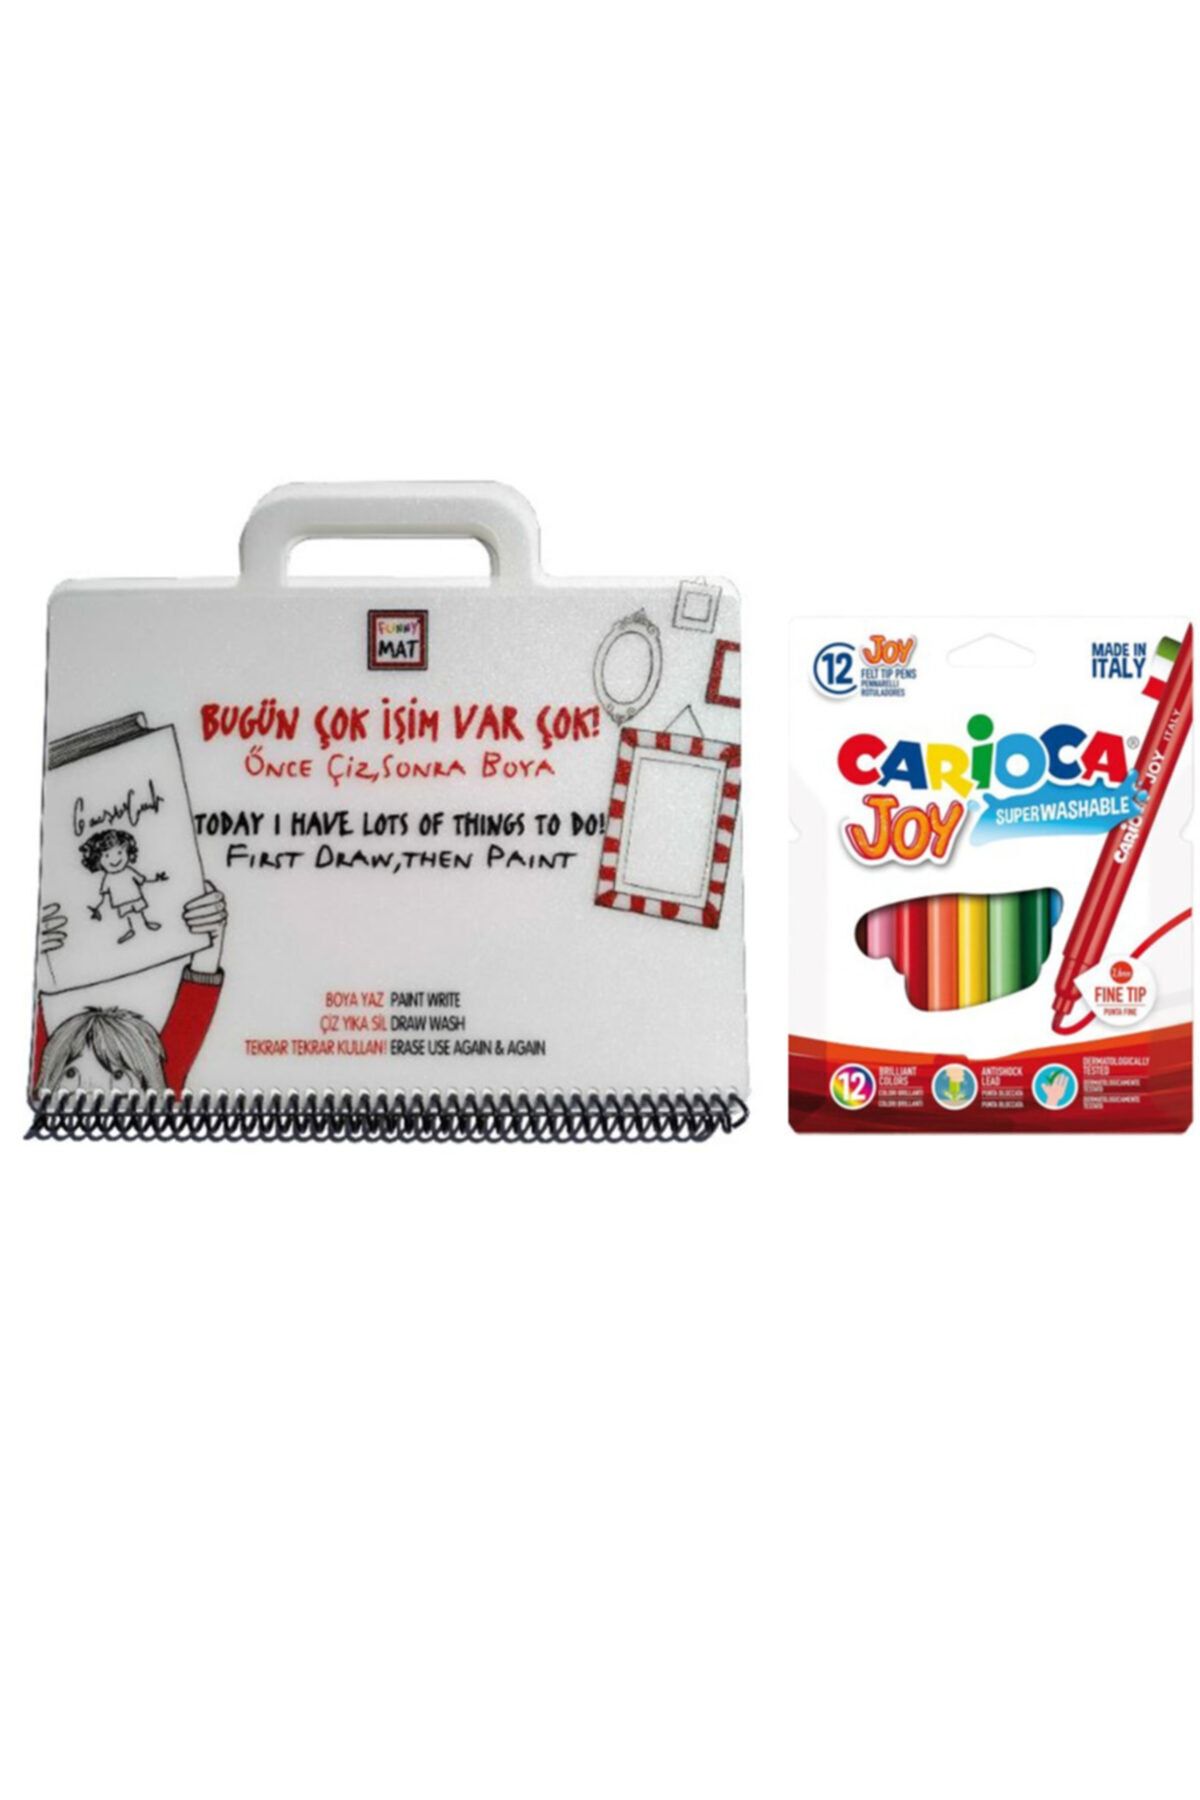 Carioca Barker Akademi Çocuk Funny Mat Mini Set Bugün Çok İşim Var - Carioca Joy 12'li Keçeli Boya